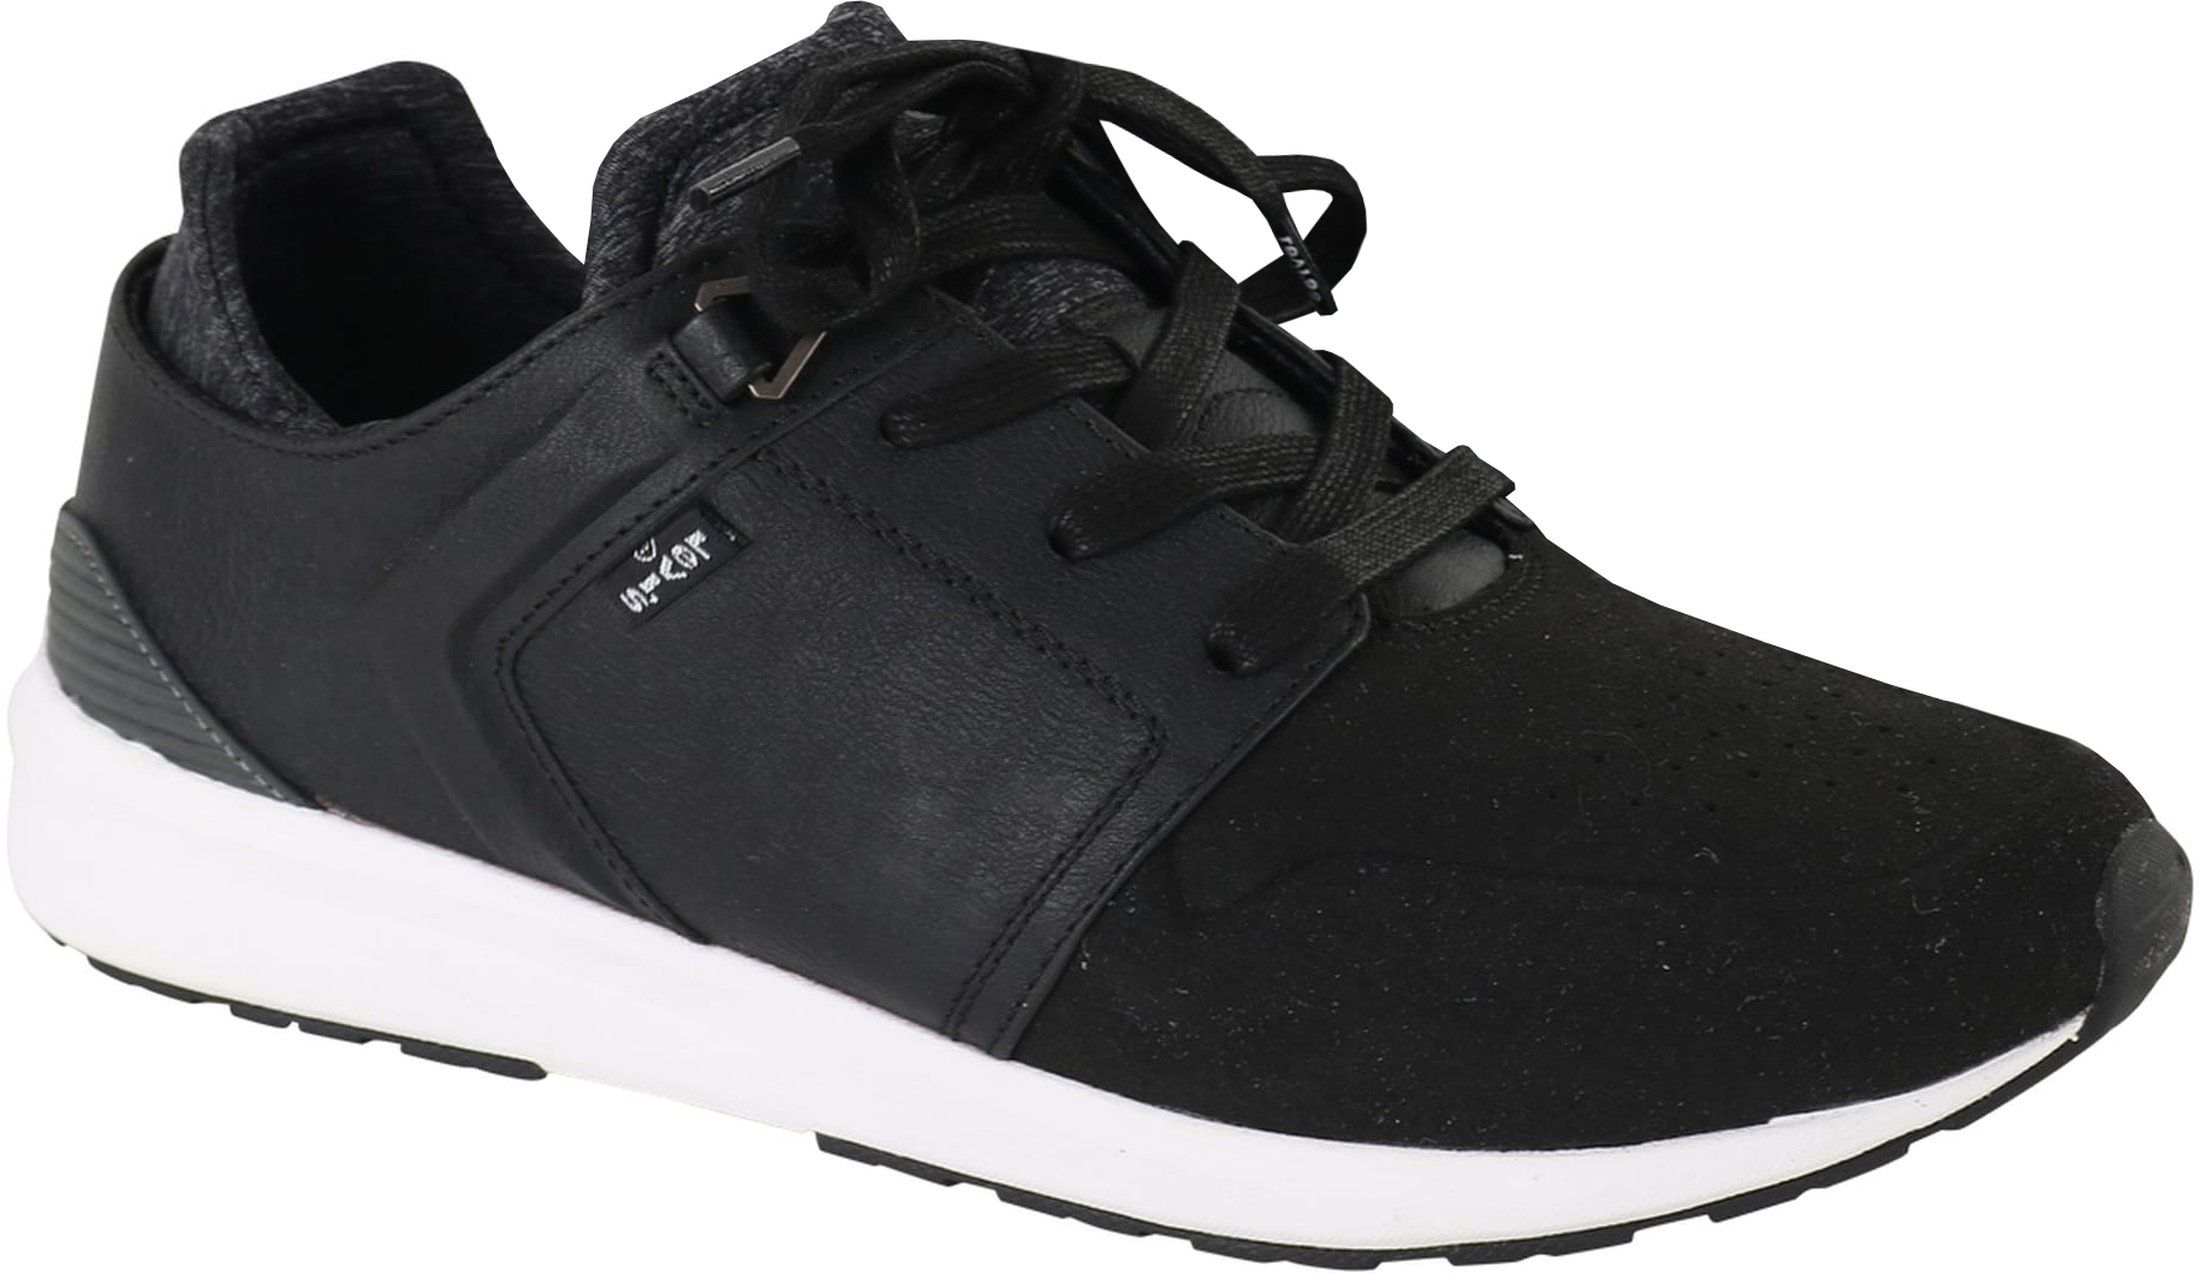 Levi's Sneaker Runner Black size 10.5